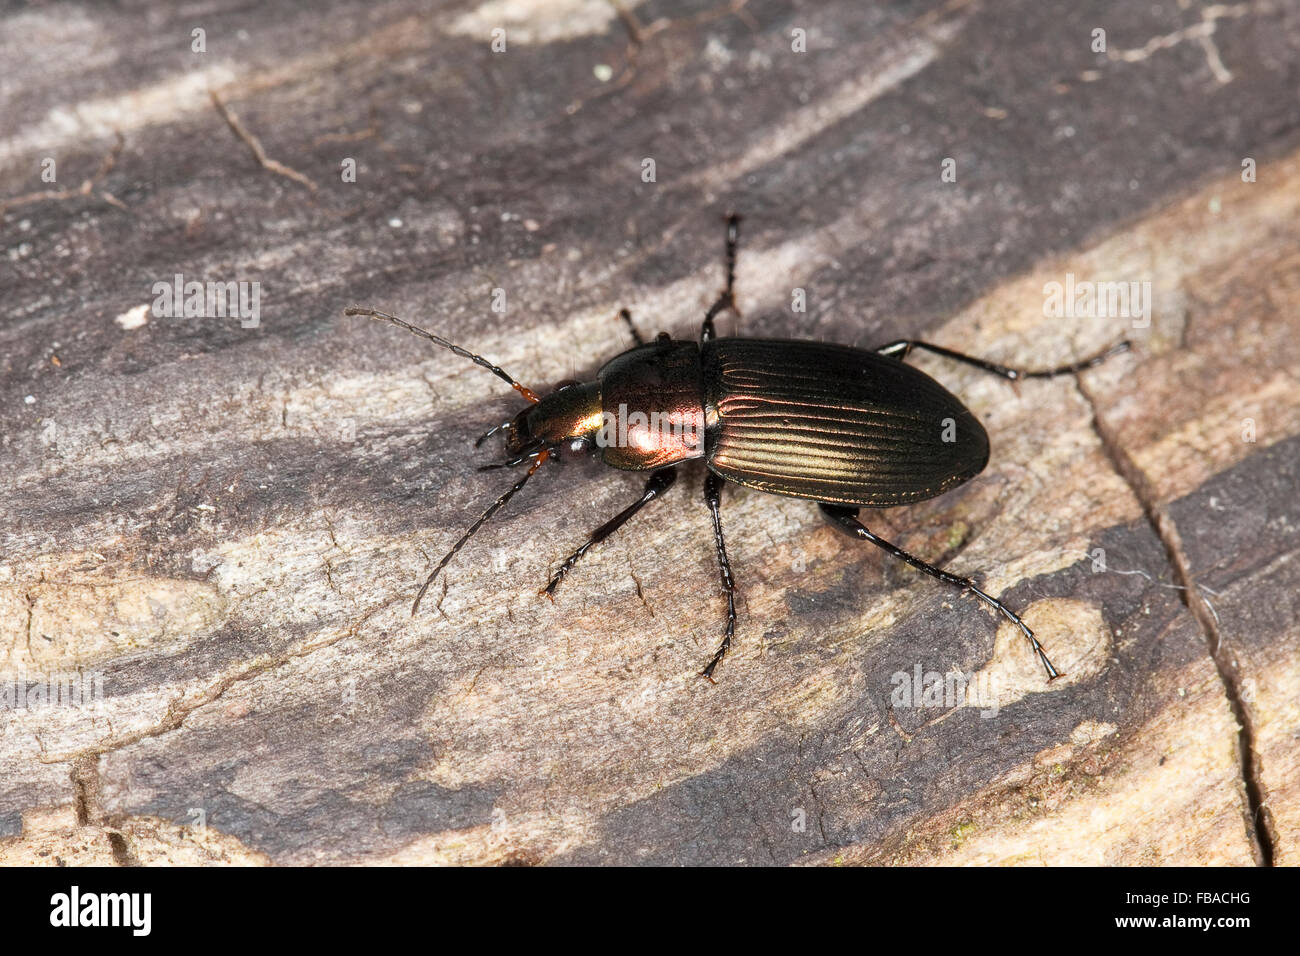 Ground beetle, Kupferfarbener Buntgrabläufer, Grabläufer, Schulterläufer, Buntläufer, Poecilus cupreus, Pterostichus cupreus Stock Photo